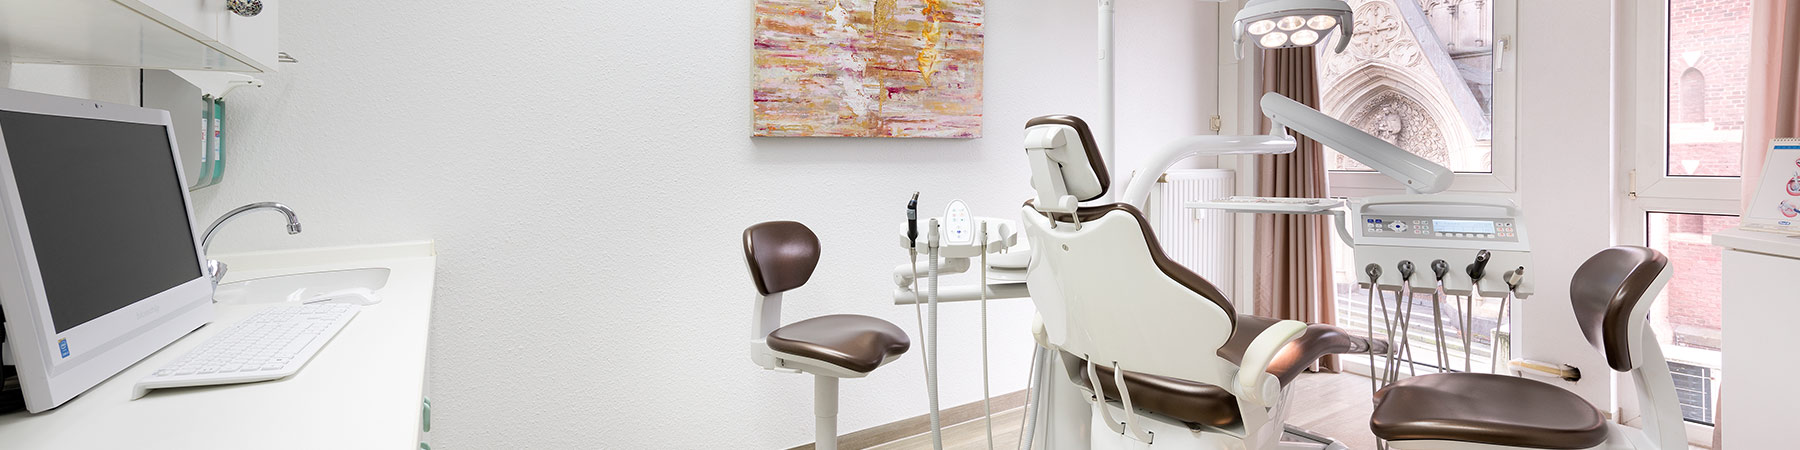 Umfassende Behandlungen beim Zahnarzt in Mönchengladbach